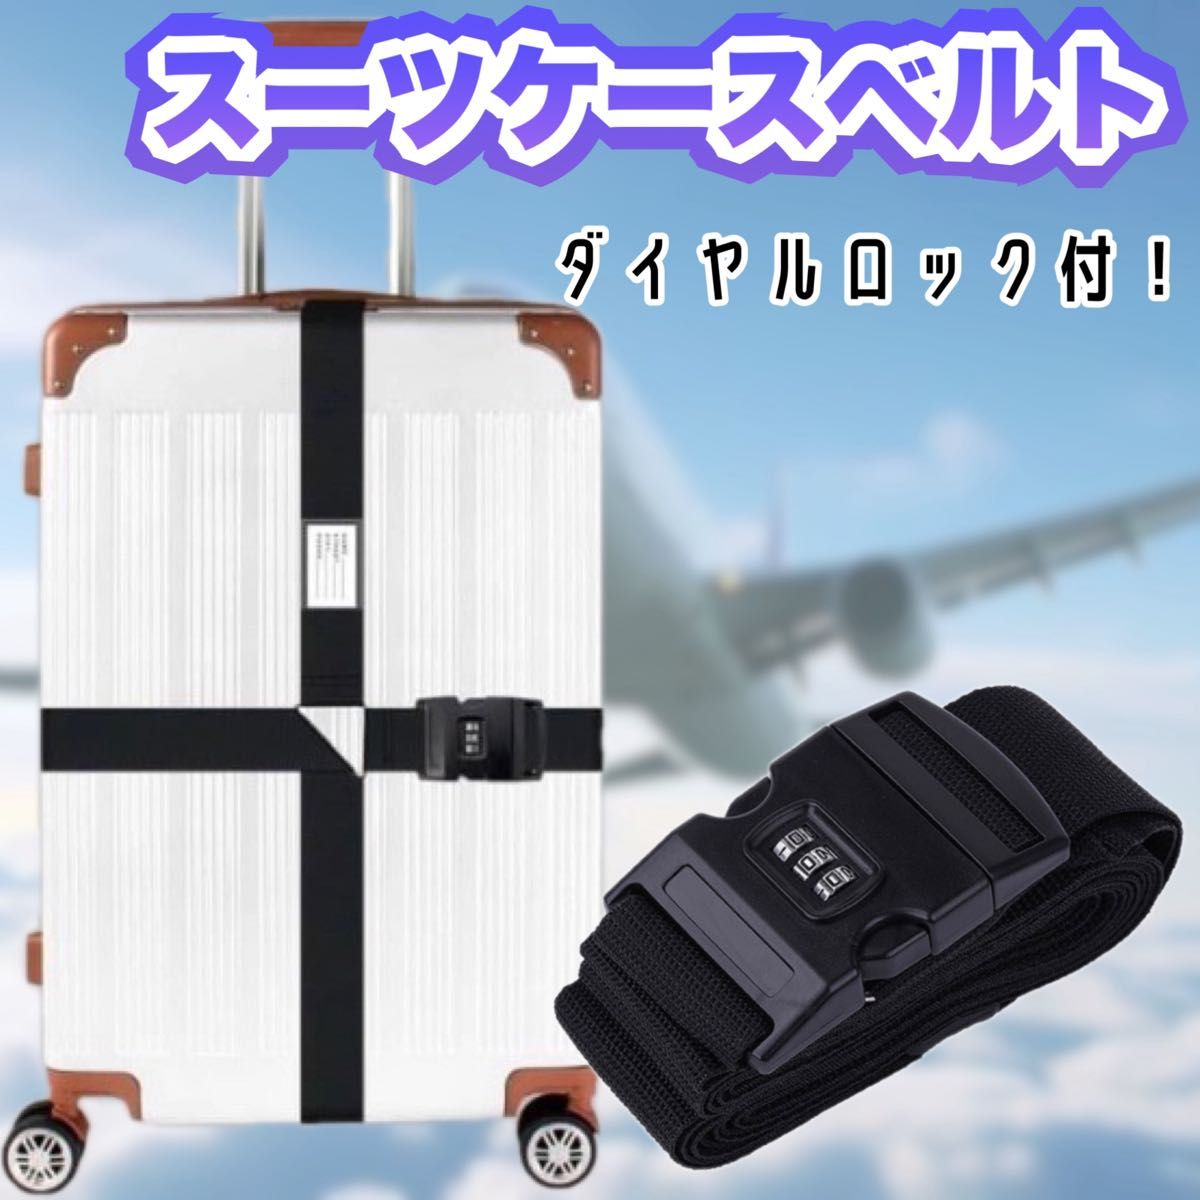 スーツケースベルト 十字 3桁ダイヤル式 キャリーケースベルト 海外旅行 出張 黒 ブラック